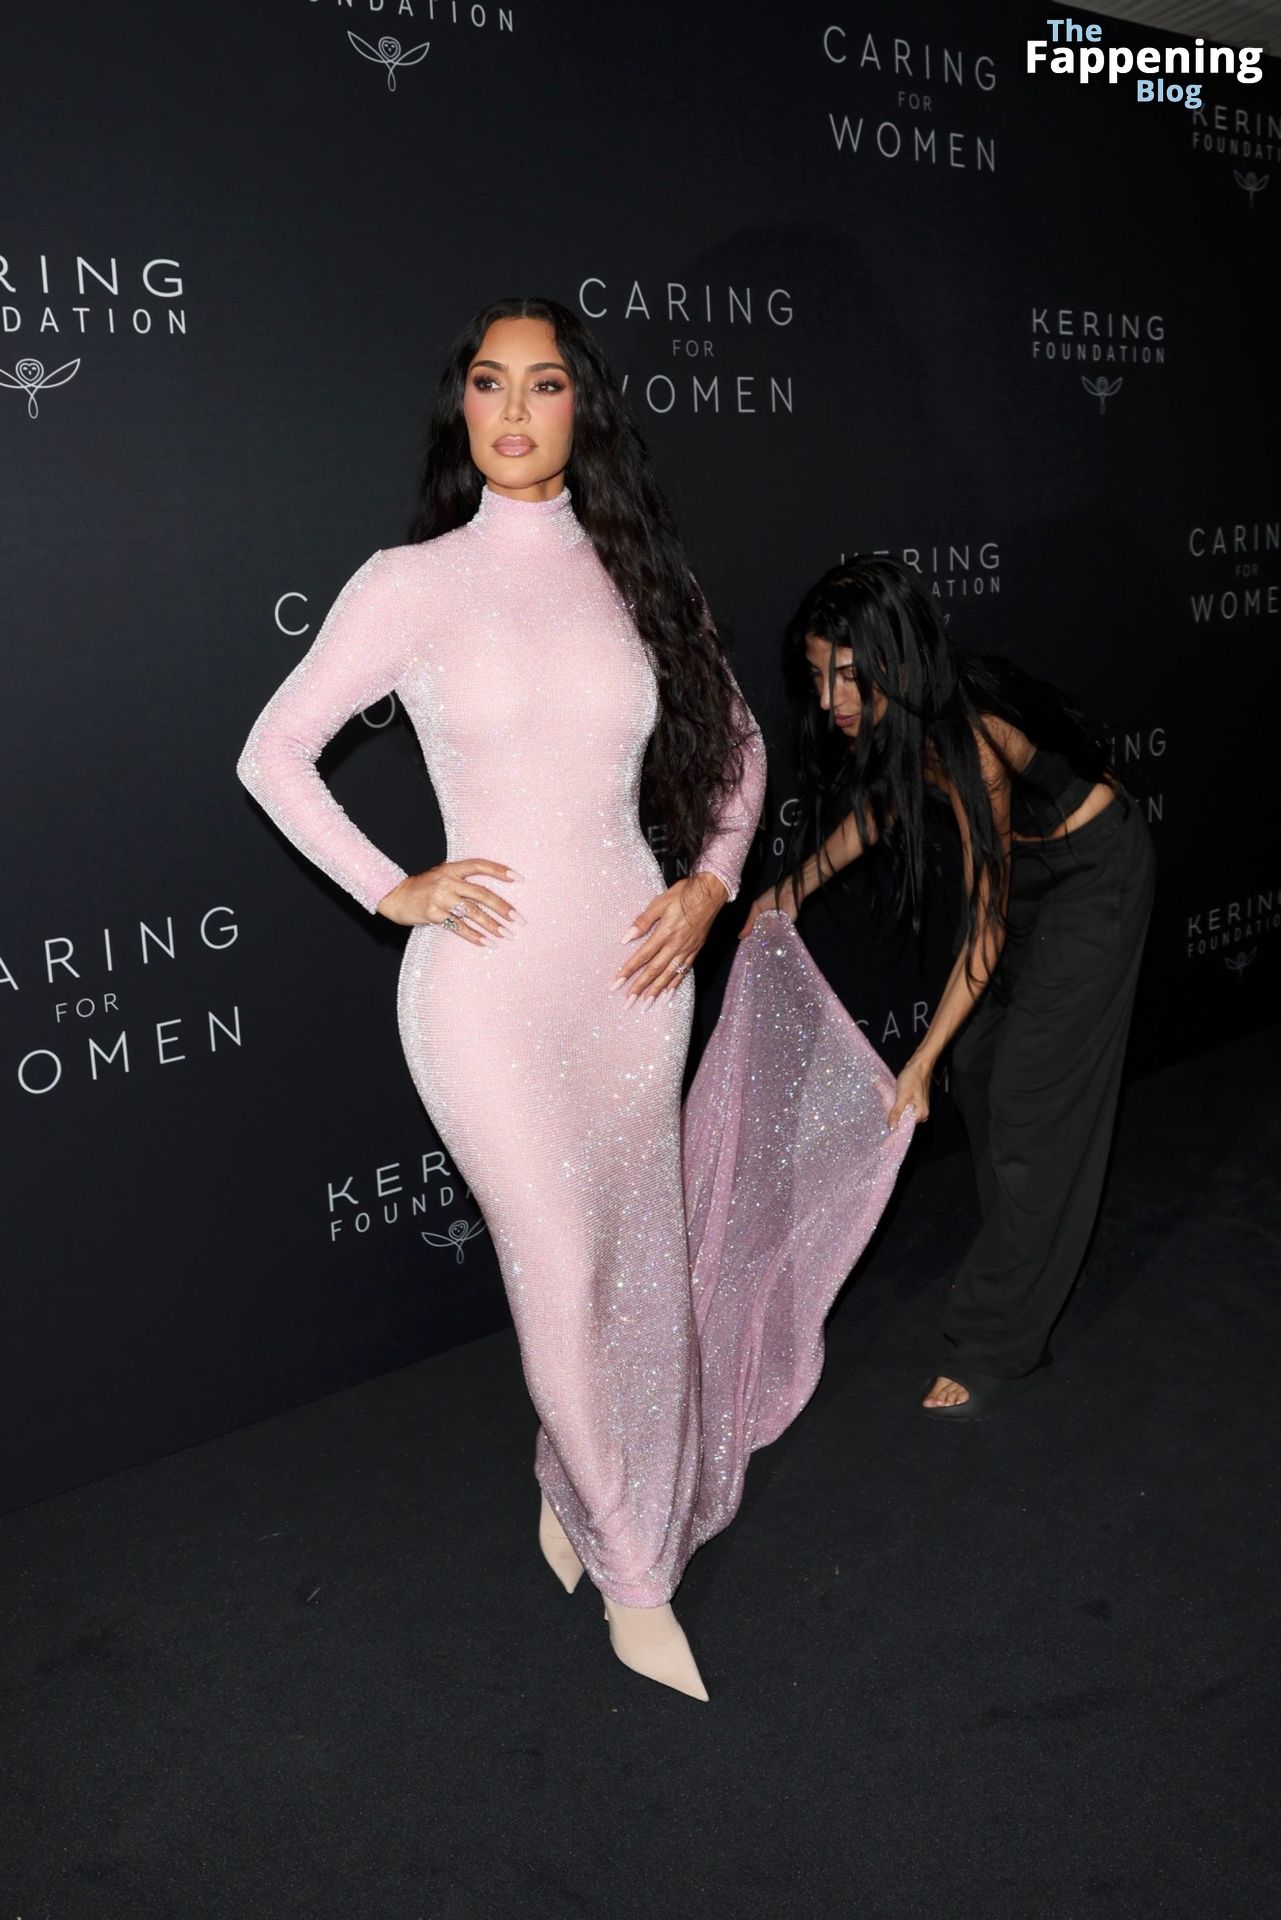 Kim-Kardashian-Sexy-75-The-Fappening-Blog.jpg